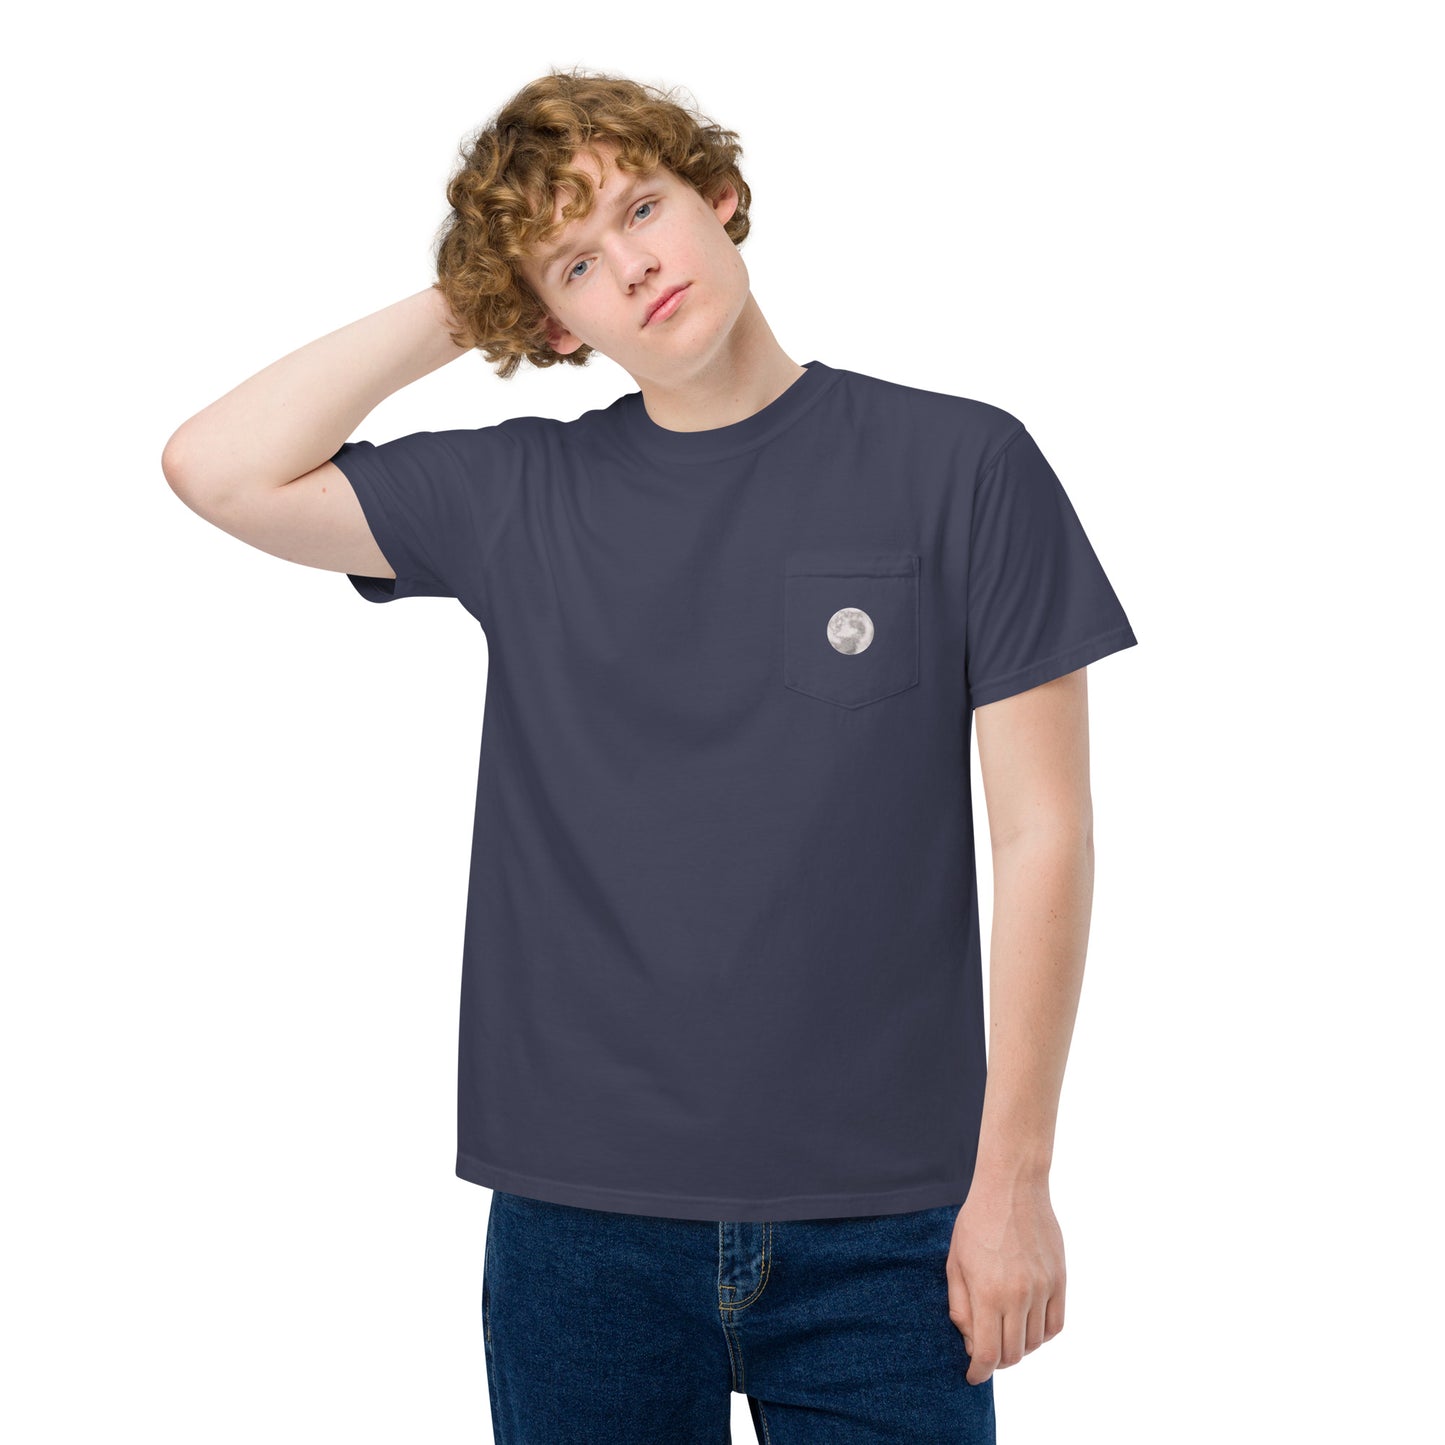 Moon Light pocket t-shirt